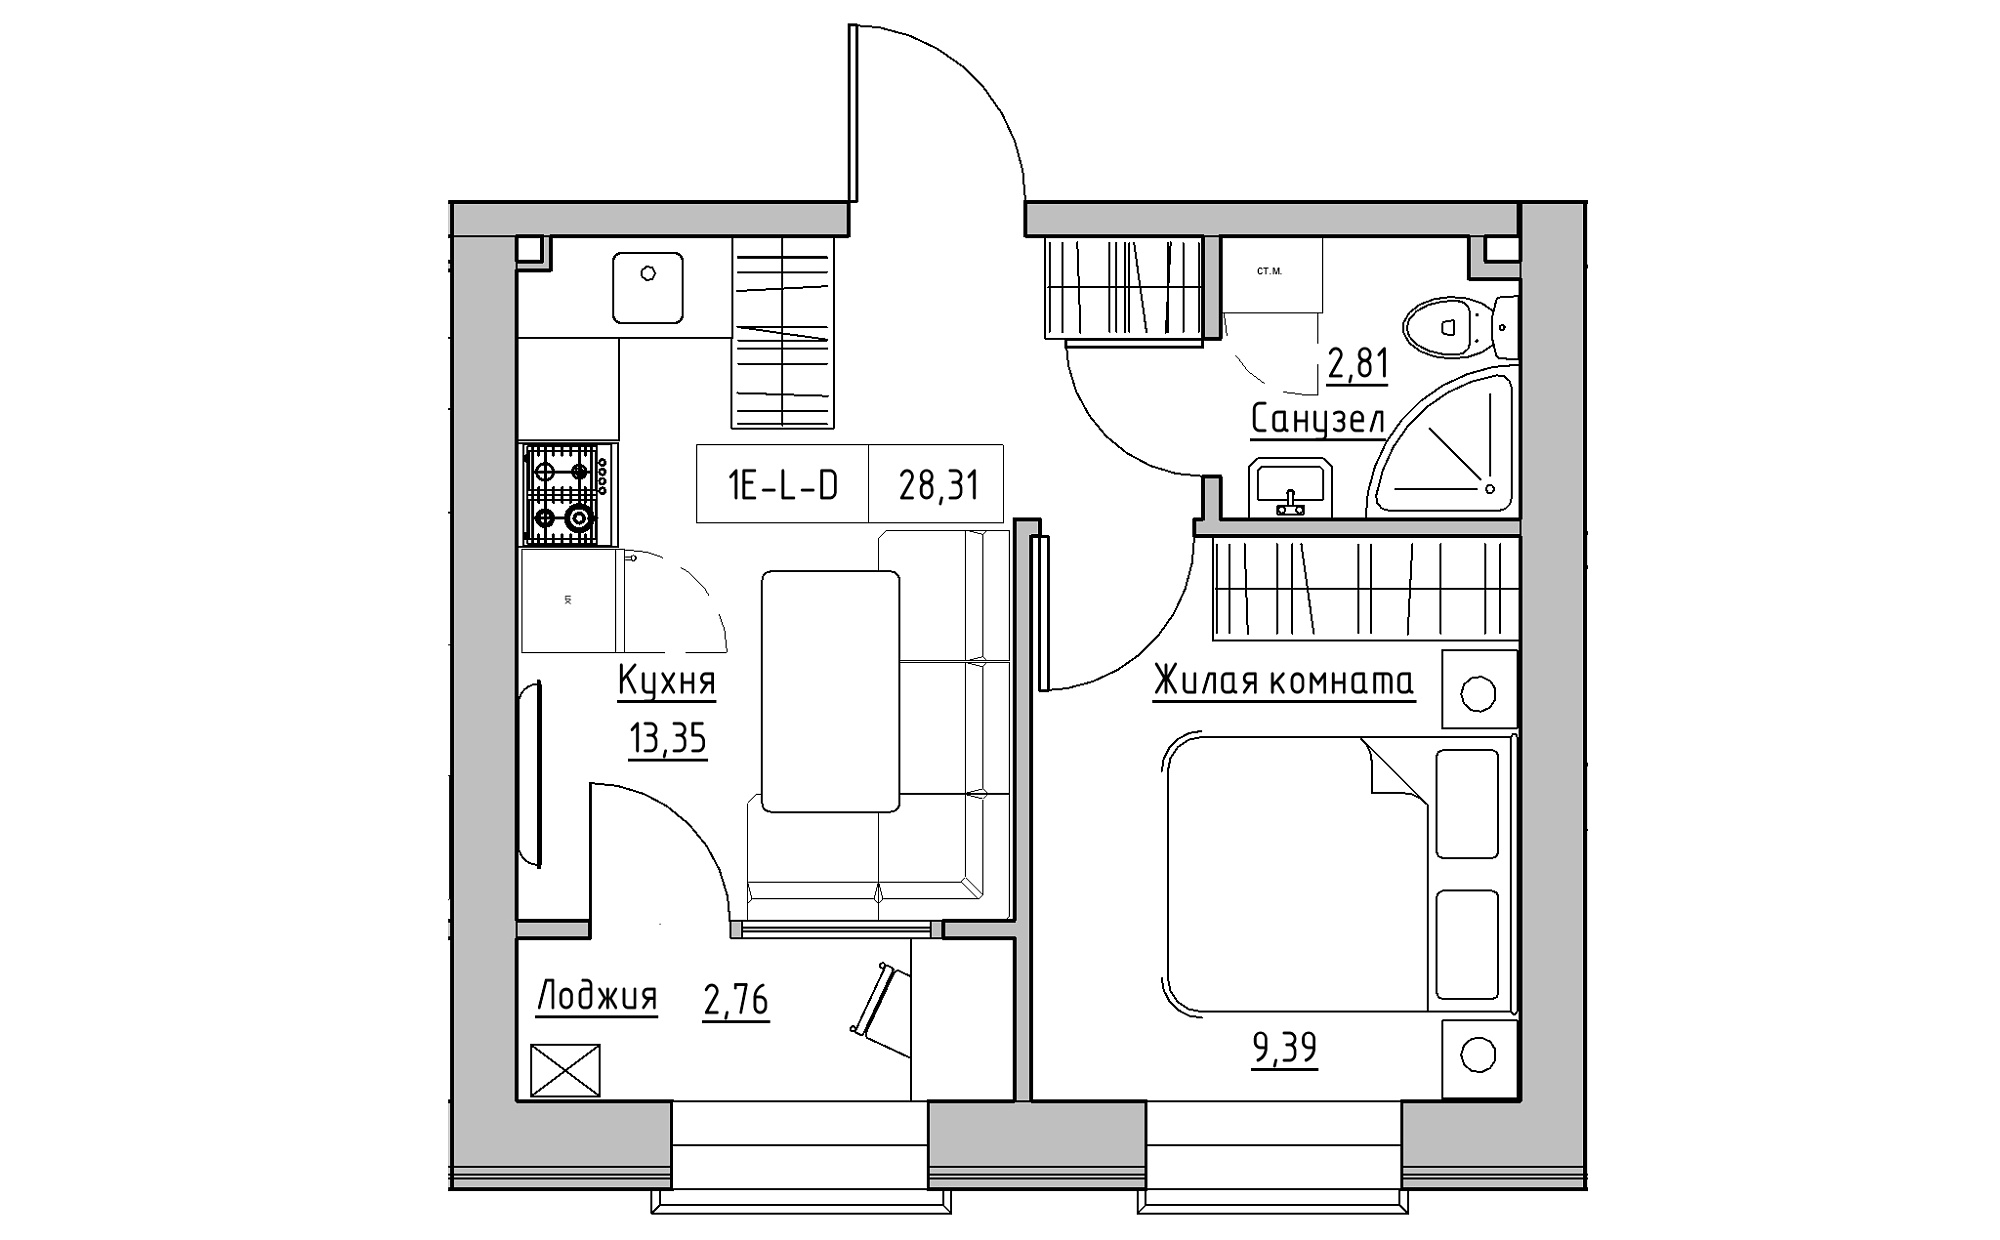 Планировка 1-к квартира площей 28.31м2, KS-022-05/0001.